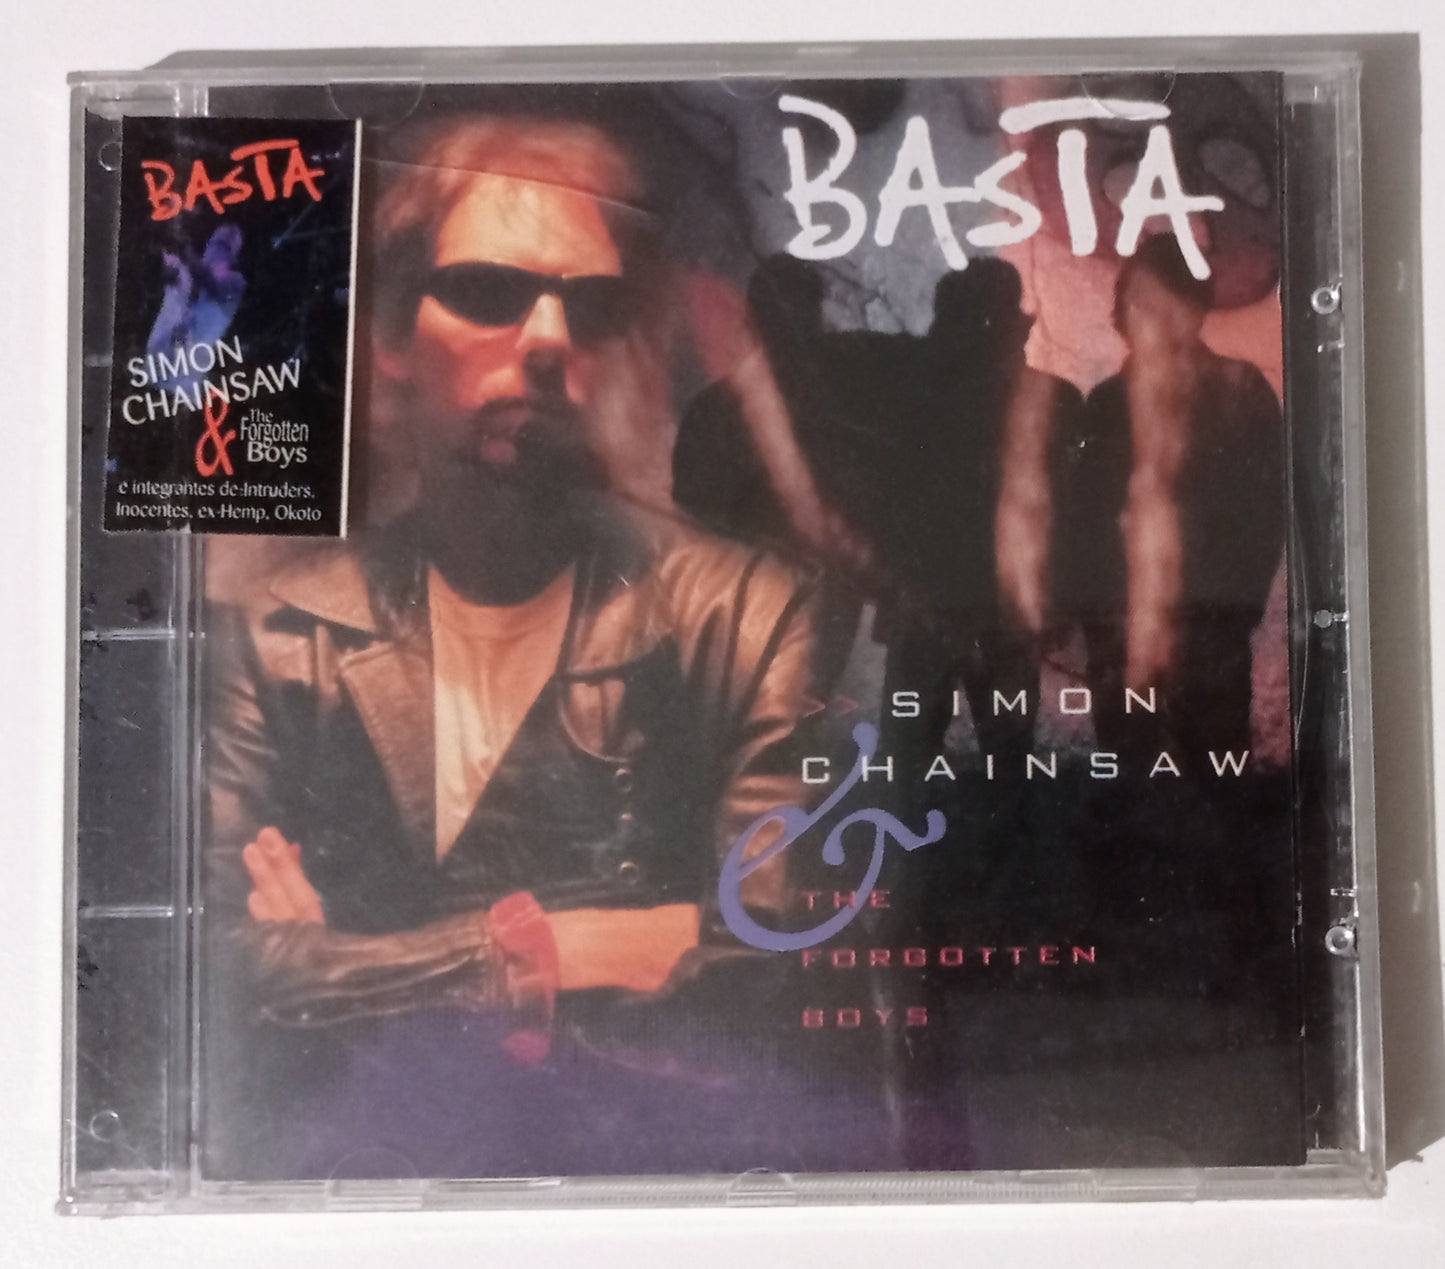 Simon Chainsaw & The Forgotten Boys - Basta (CD Nacional - LACRADO)